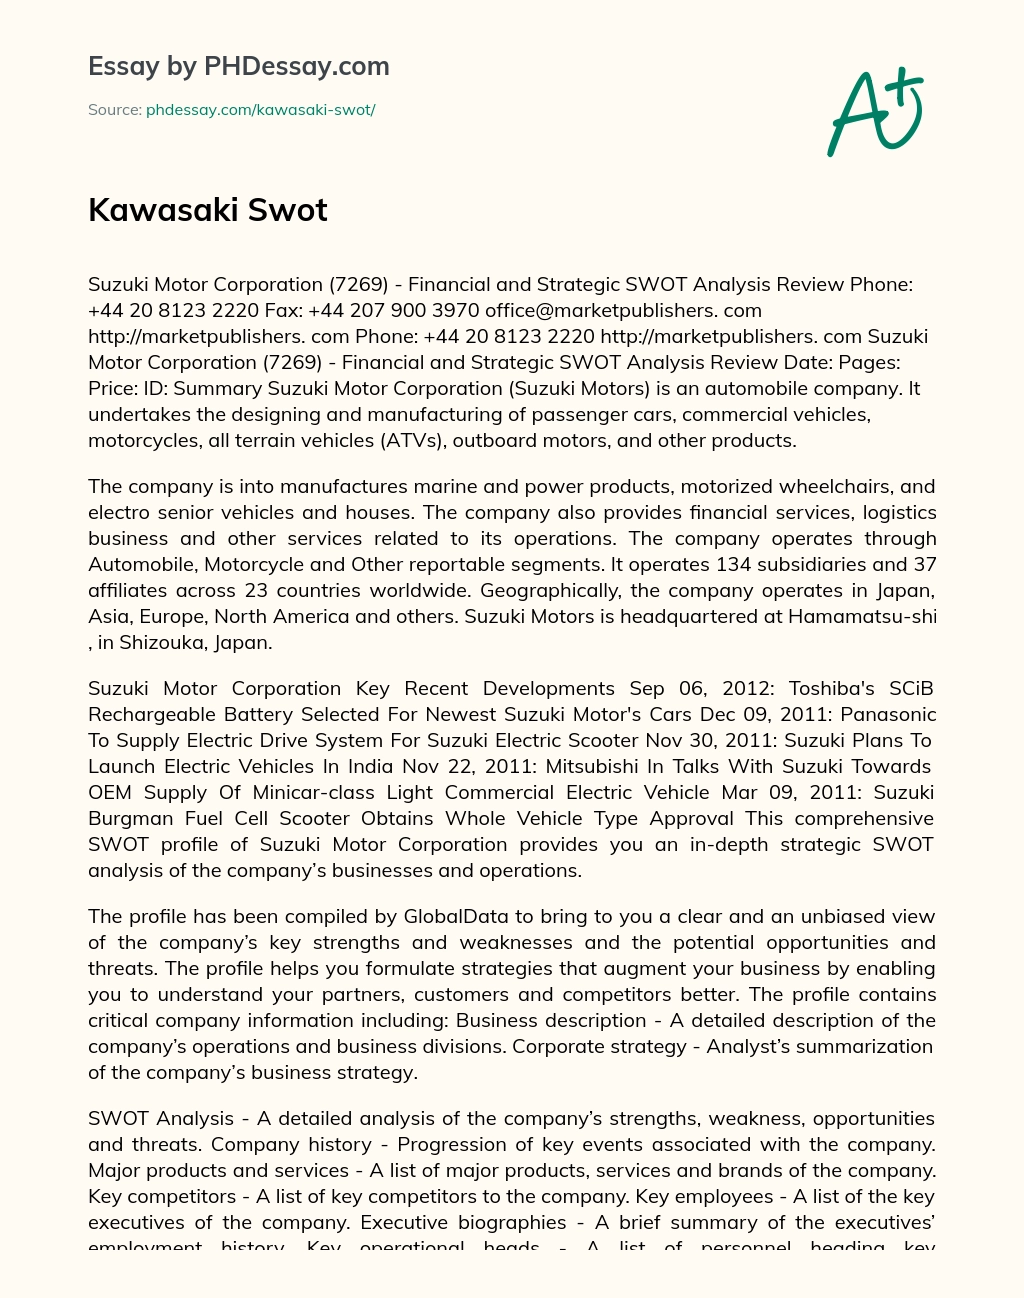 Kawasaki Swot essay